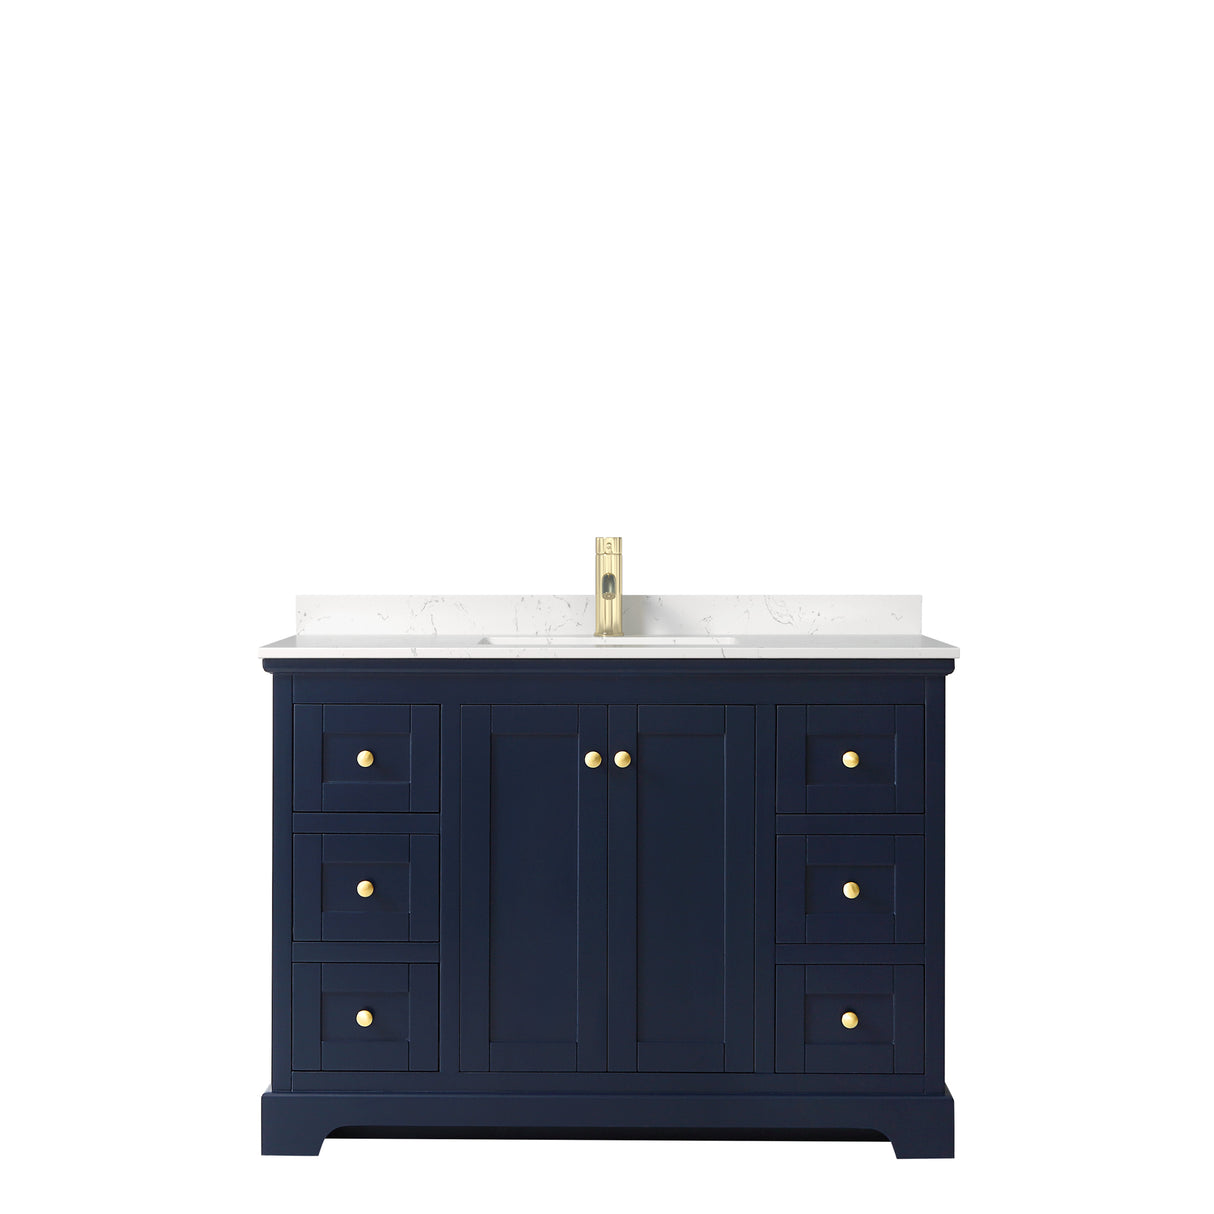 Avery 48 Inch Single Bathroom Vanity in Dark Blue Carrara Cultured Marble Countertop Undermount Square Sink No Mirror